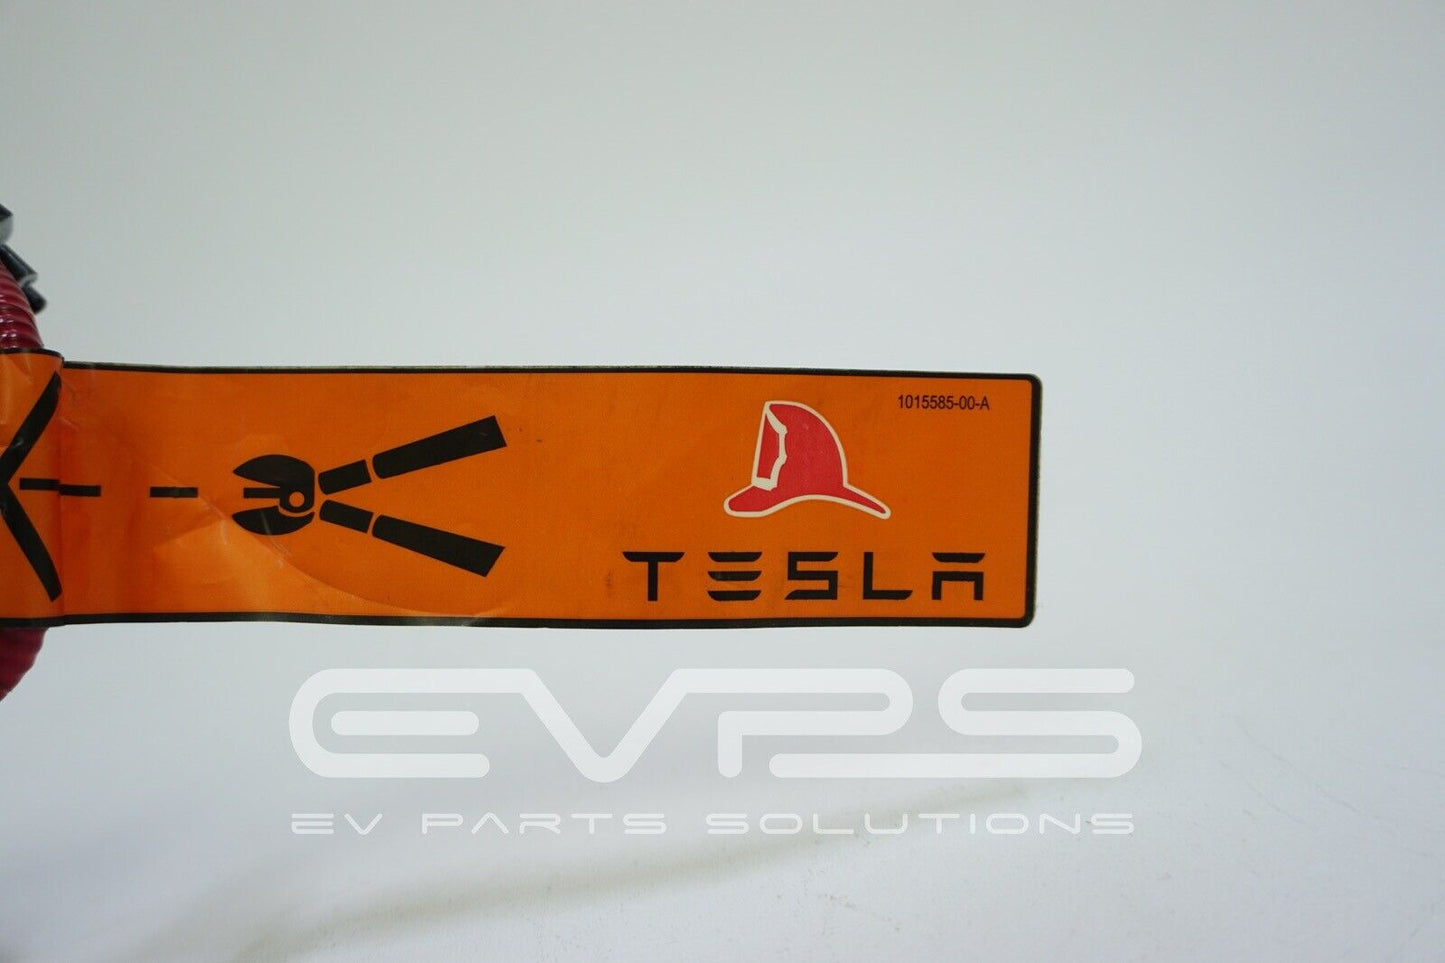 Tesla Model S (2012-2017) OEM First Responder Cut Loop 1028936-00-A